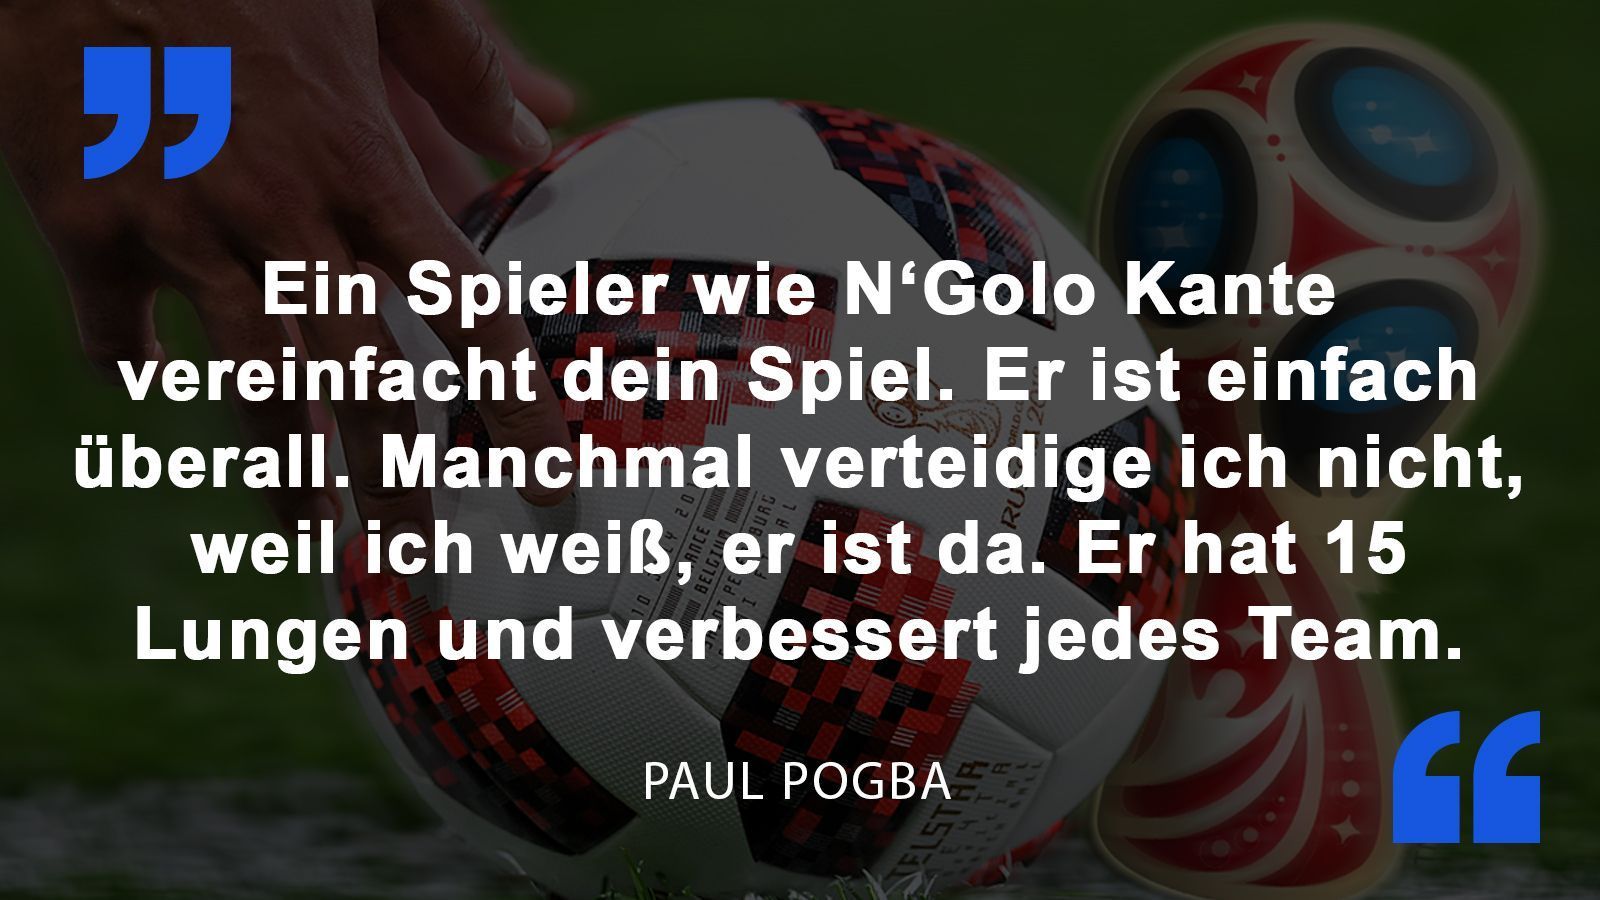 
                <strong>Paul Pogba</strong><br>
                Paul Pogba über seinen französischen Mitspieler N'Golo Kante vor dem Halbfinalspiel gegen Belgien.
              